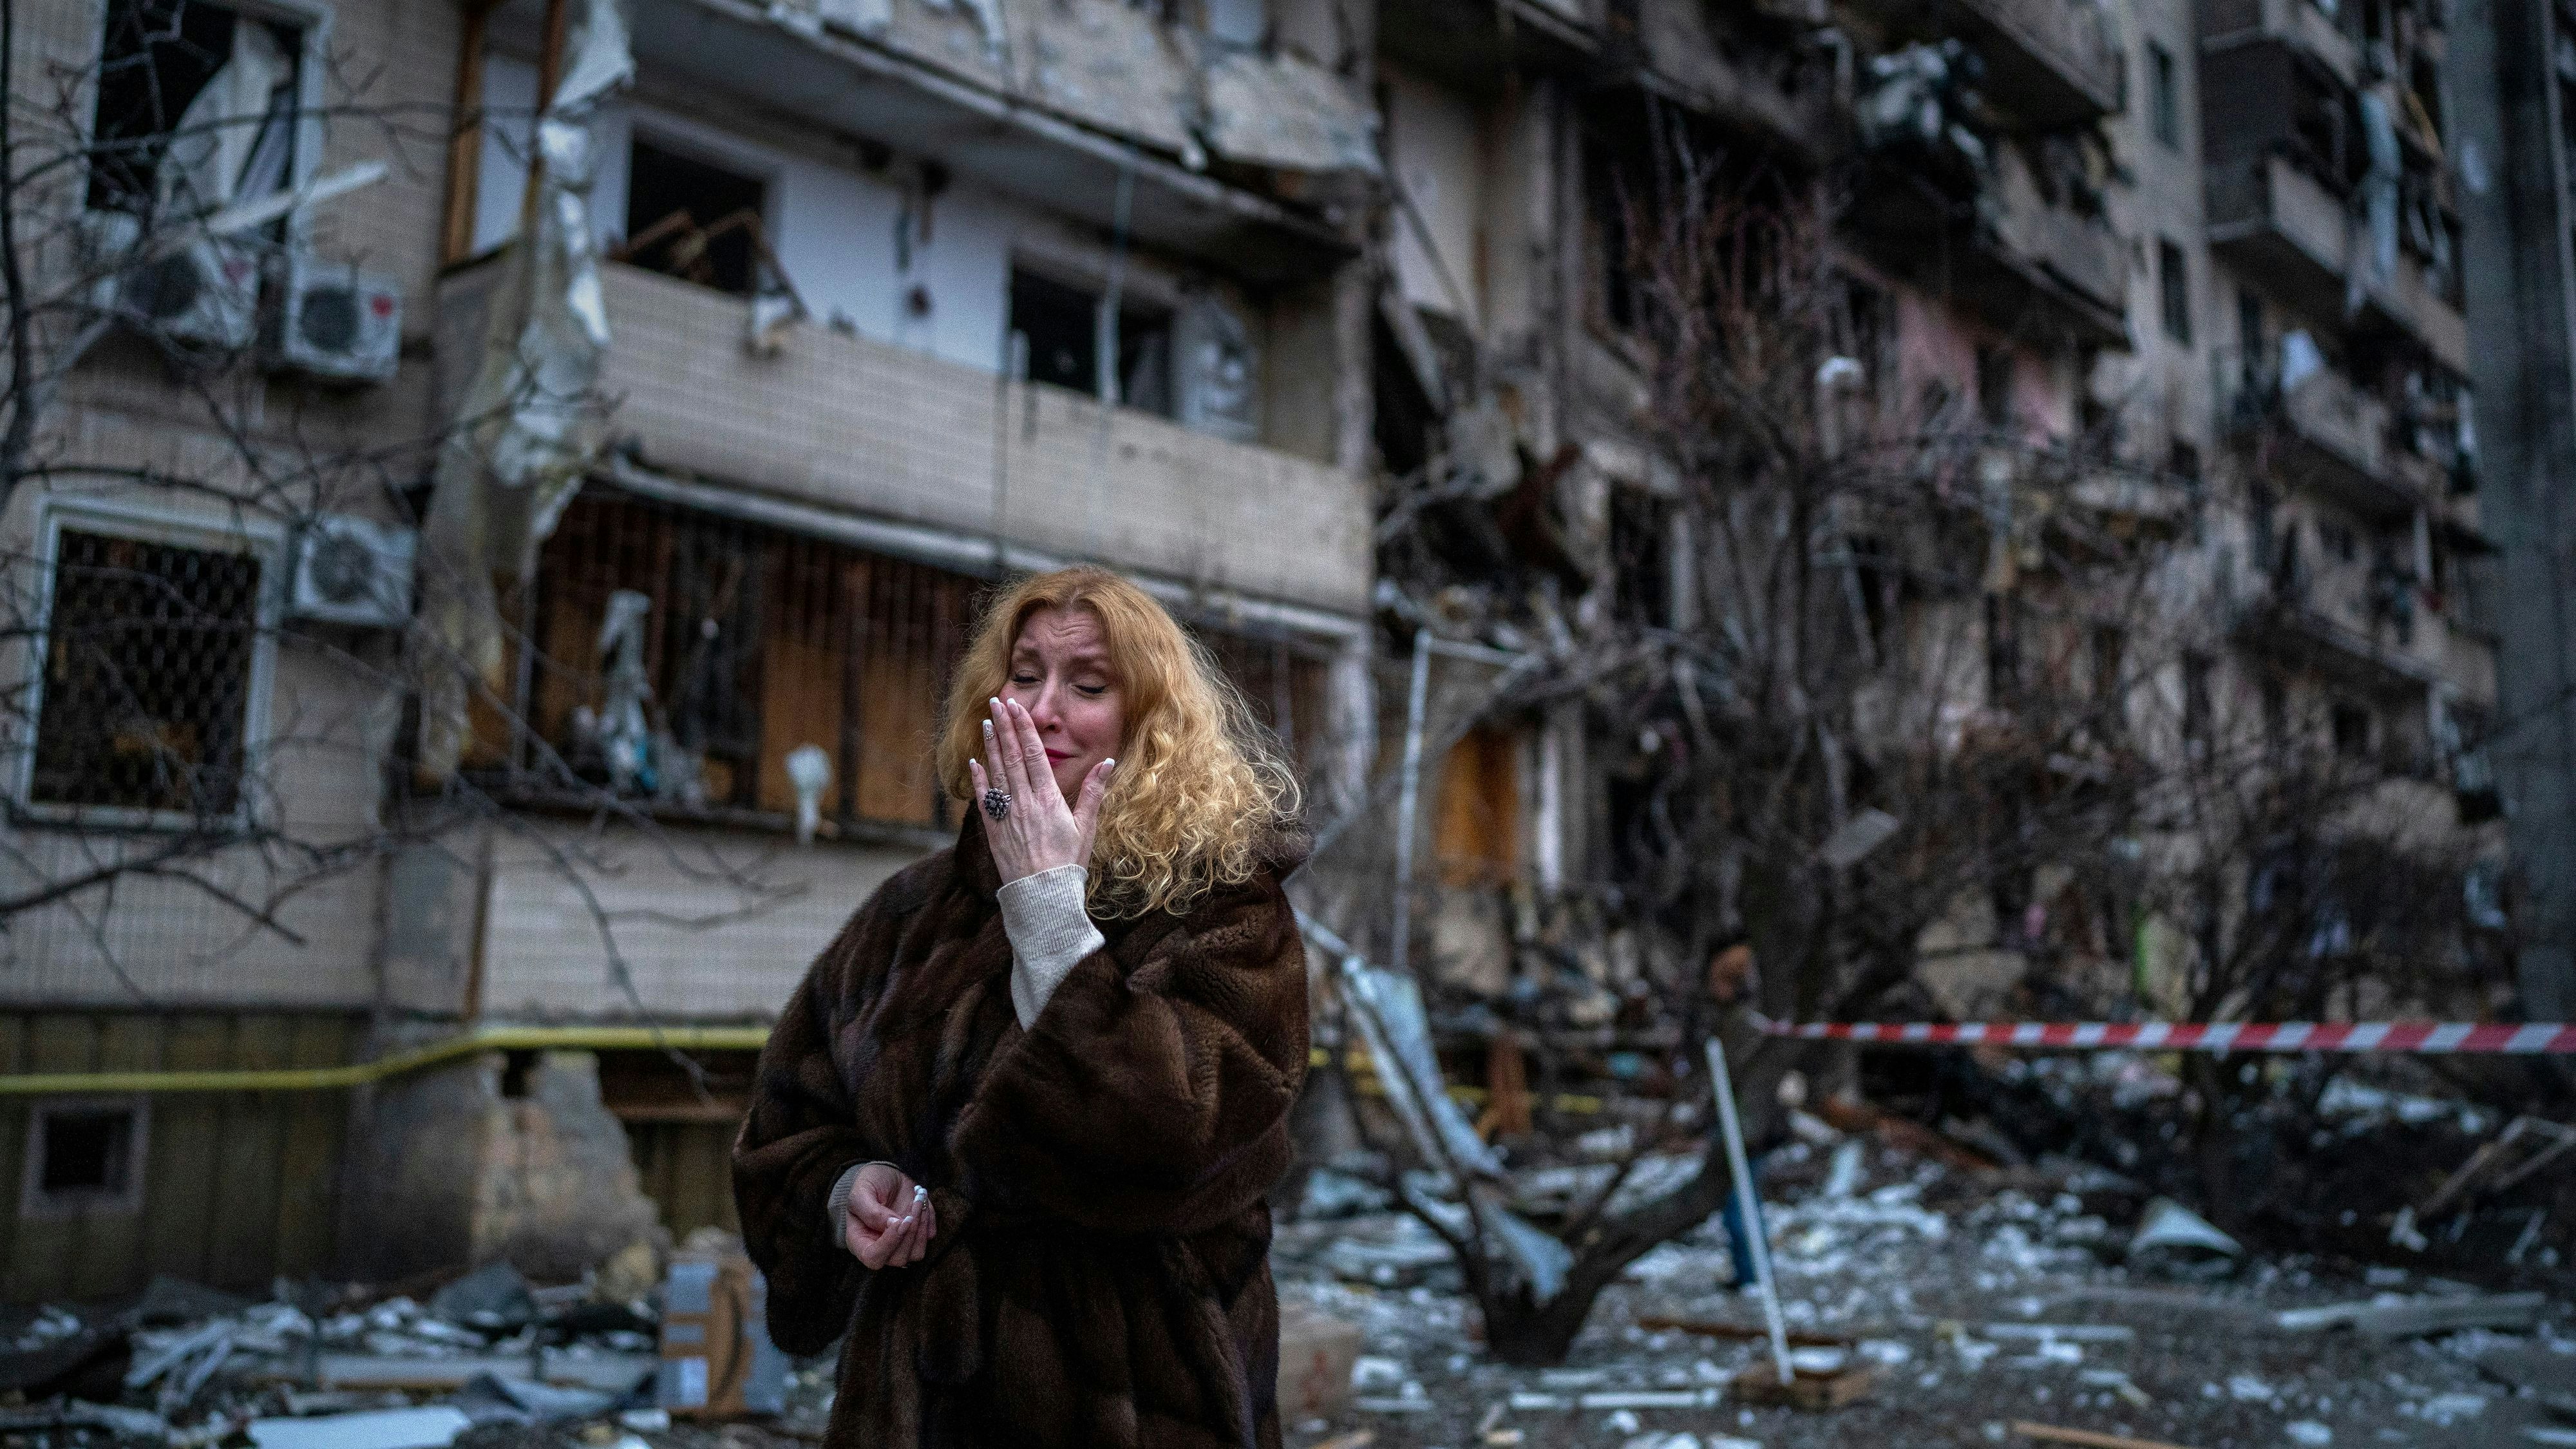 Kiew: Bei russischen Raketenangriffen wurden zahlreiche Wohnhäuser zerstört. Viele Menschen haben ihre Wohnungen verloren. Foto: dpa/Emilio Morenatti